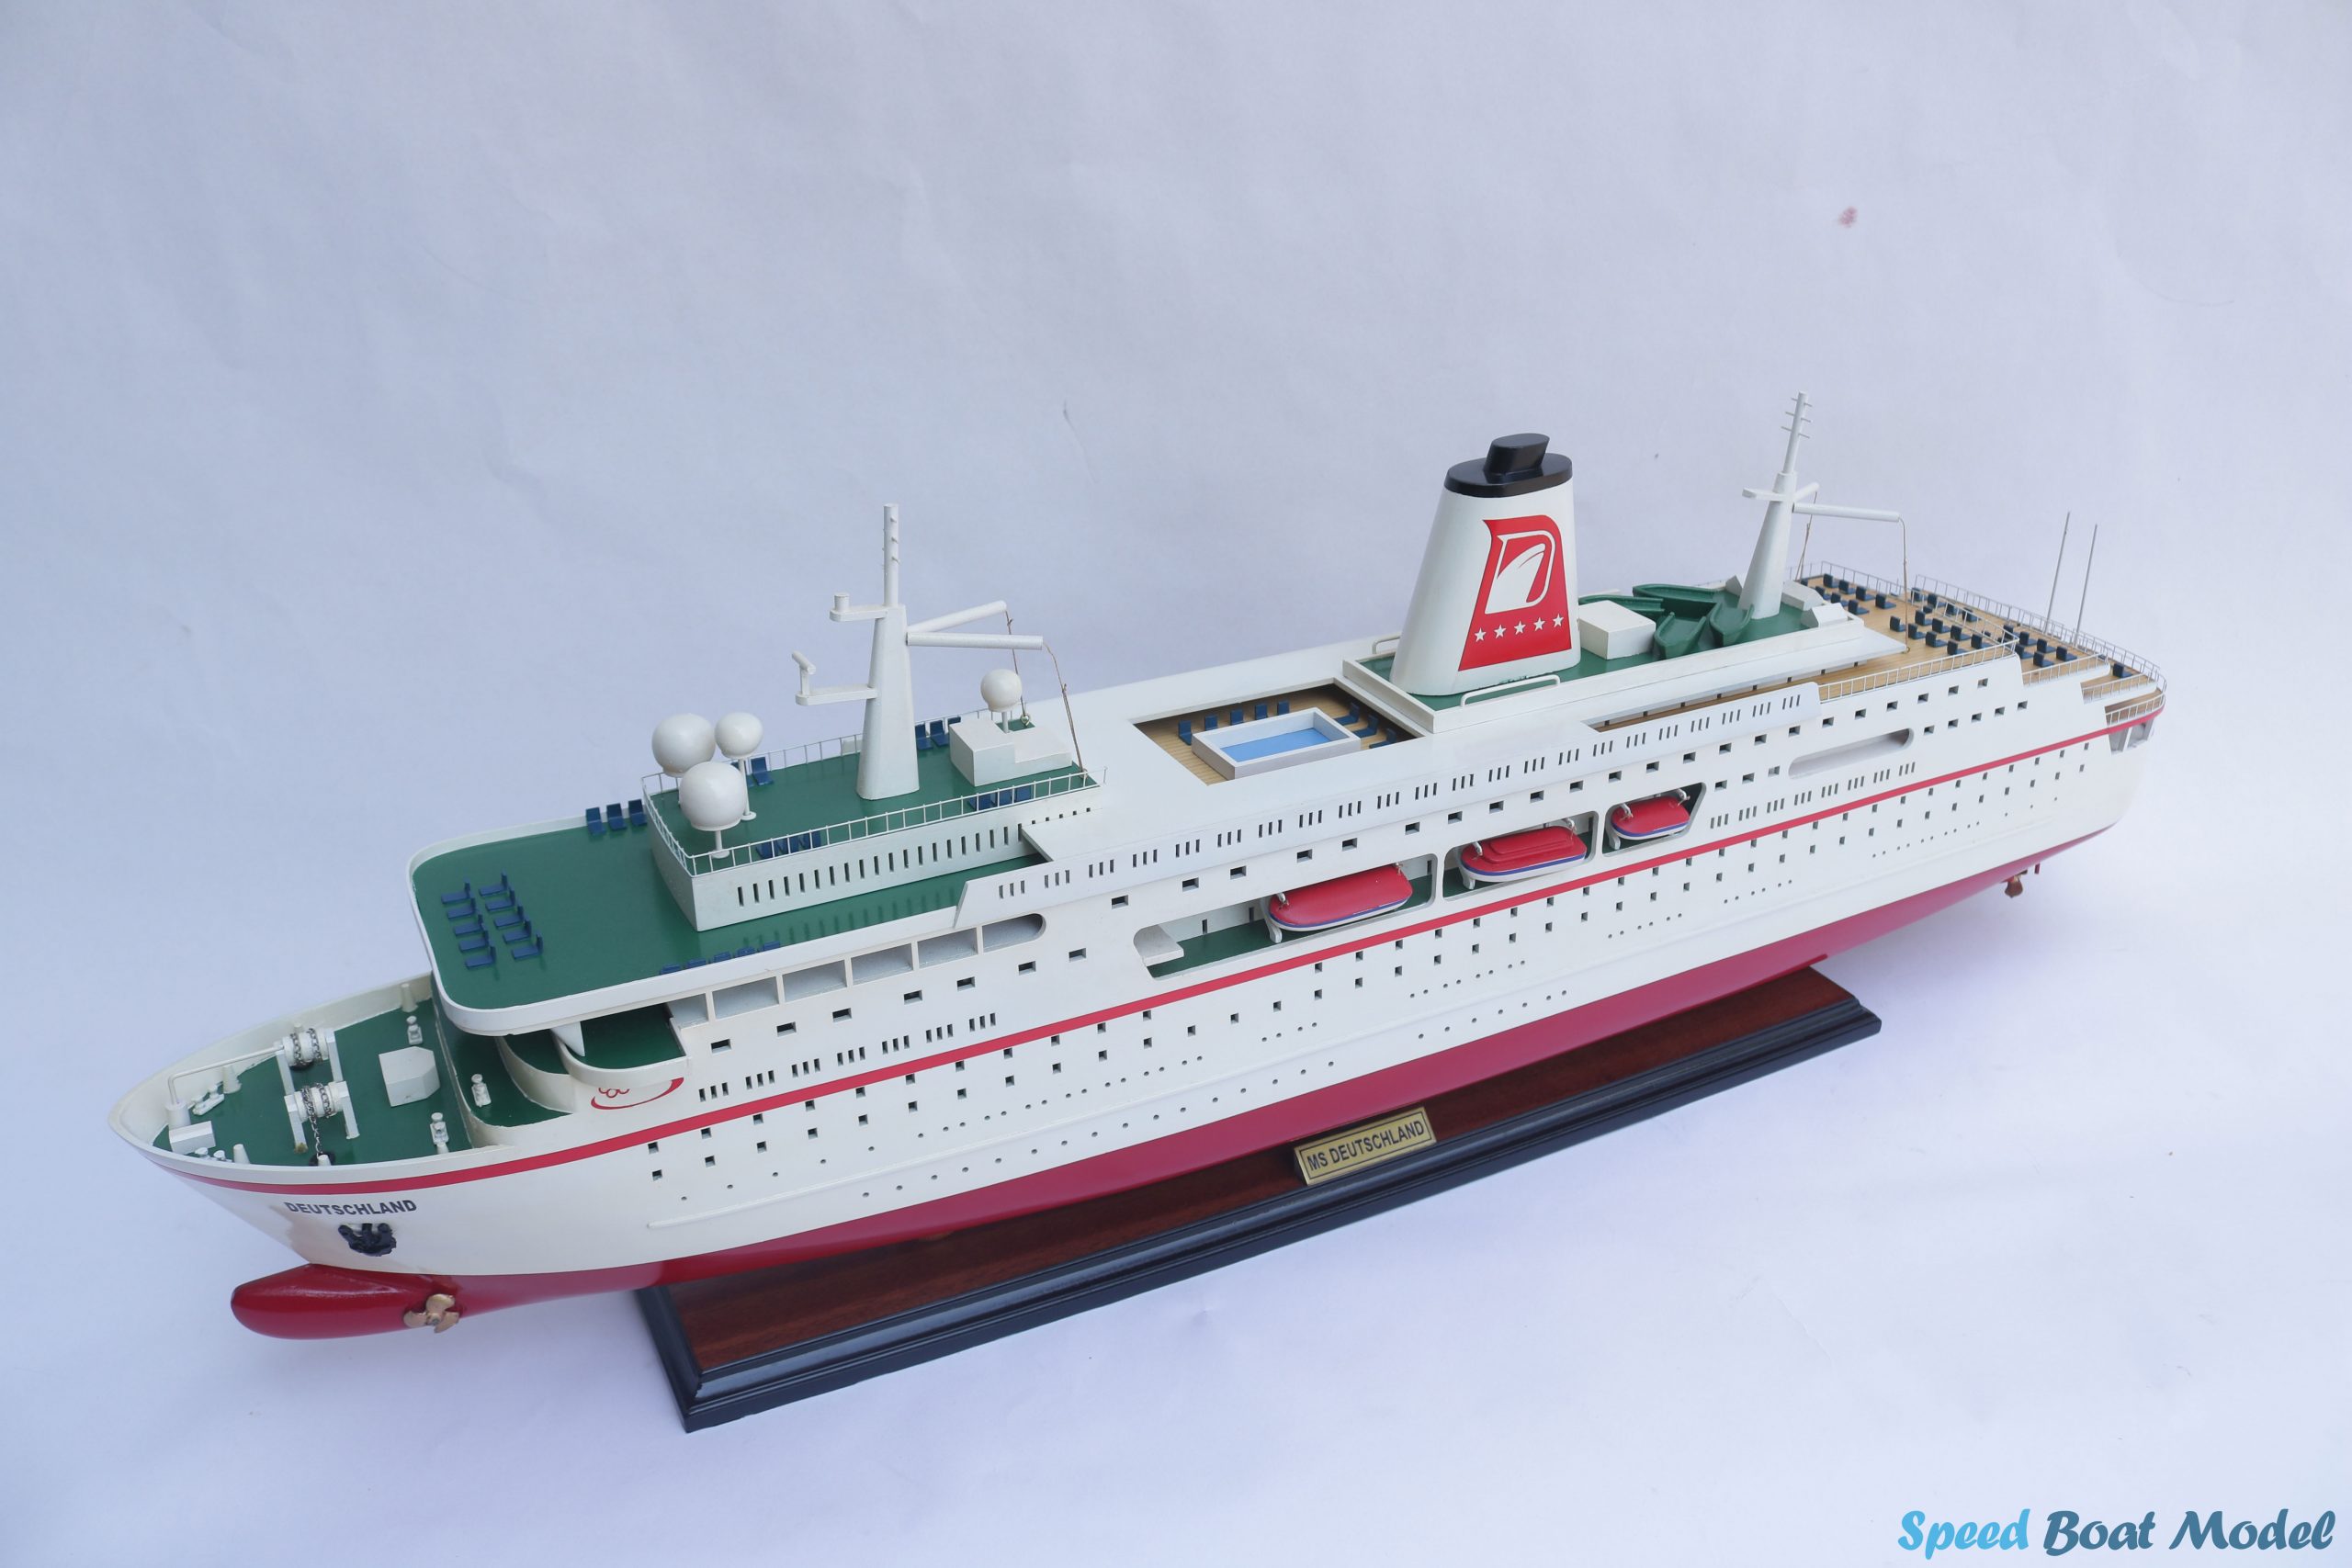 Ms Deutschland Cruise Ship Model 34.2"